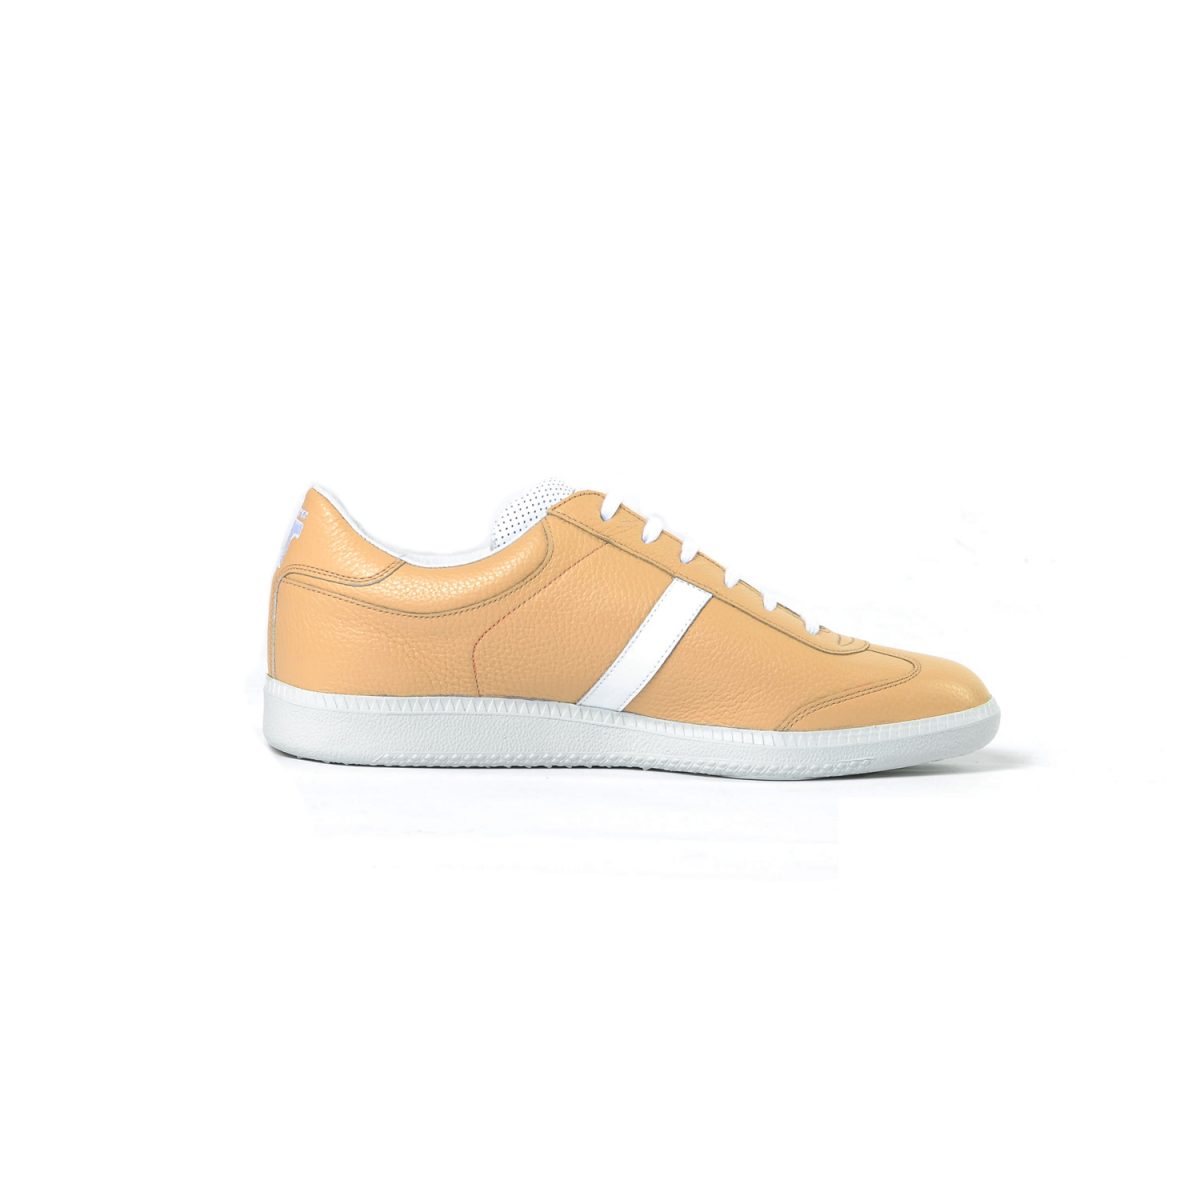 Tisza shoes - Compakt - Sand-white